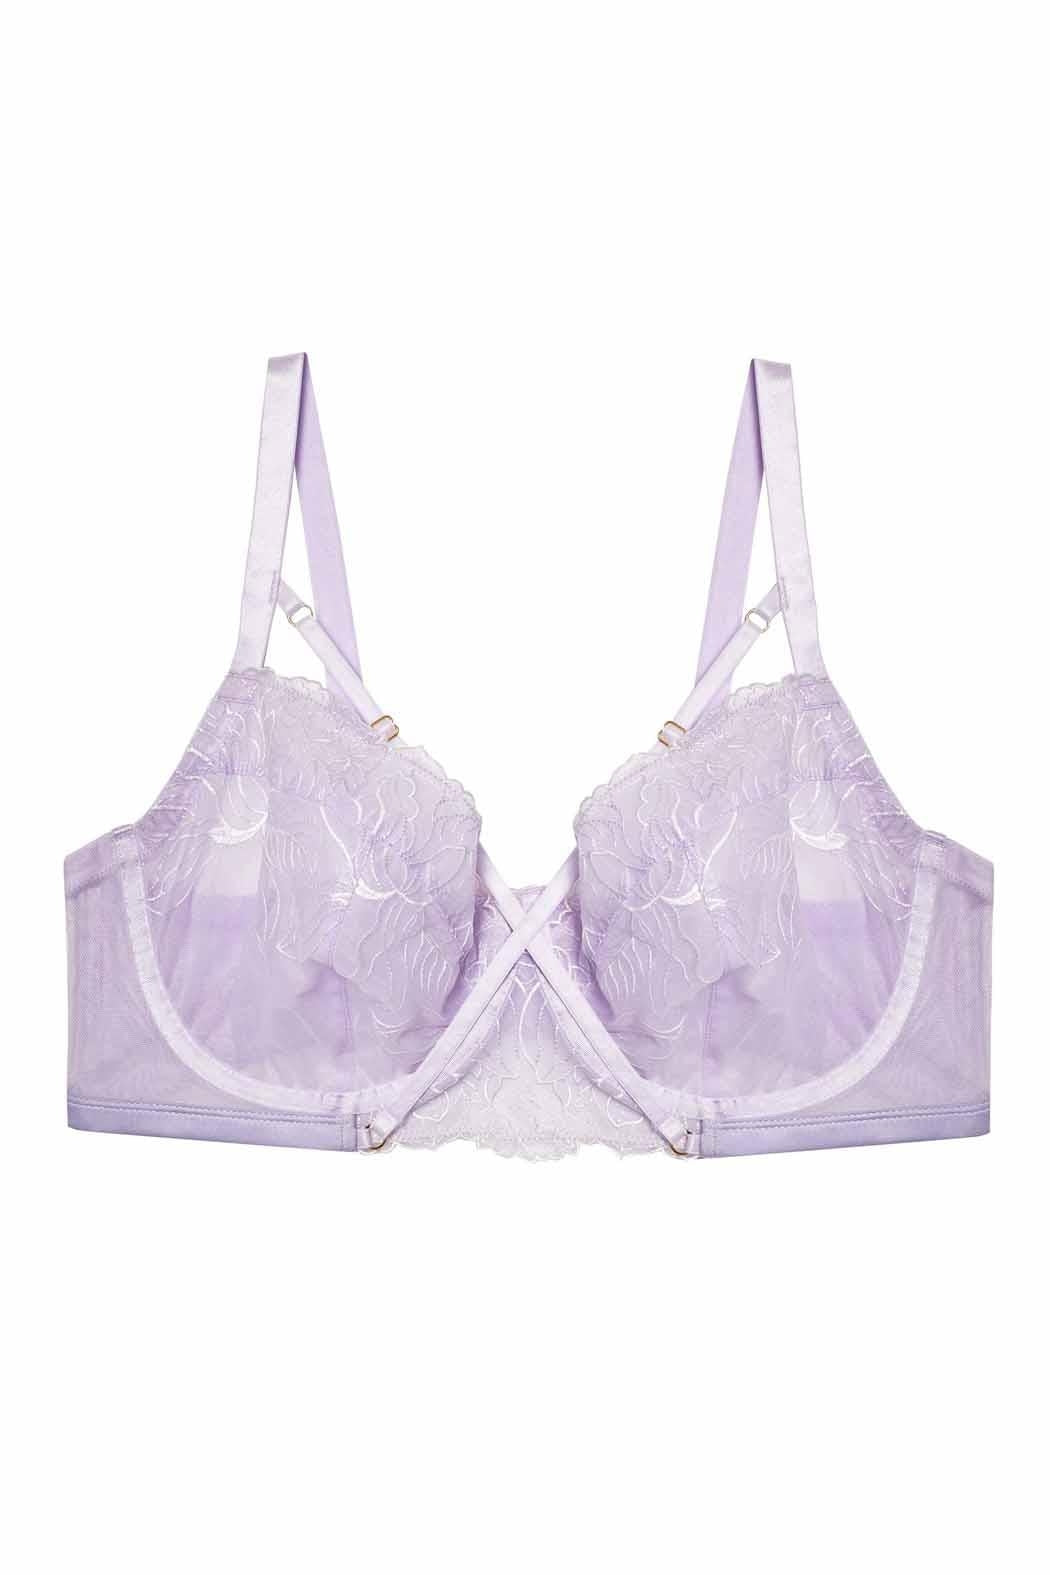 https://shoptiques.com/cdn/shop/products/playful_promises-mila-lilac-lace-bra-purple-c9b5dc8c_l.jpg?v=1677004576